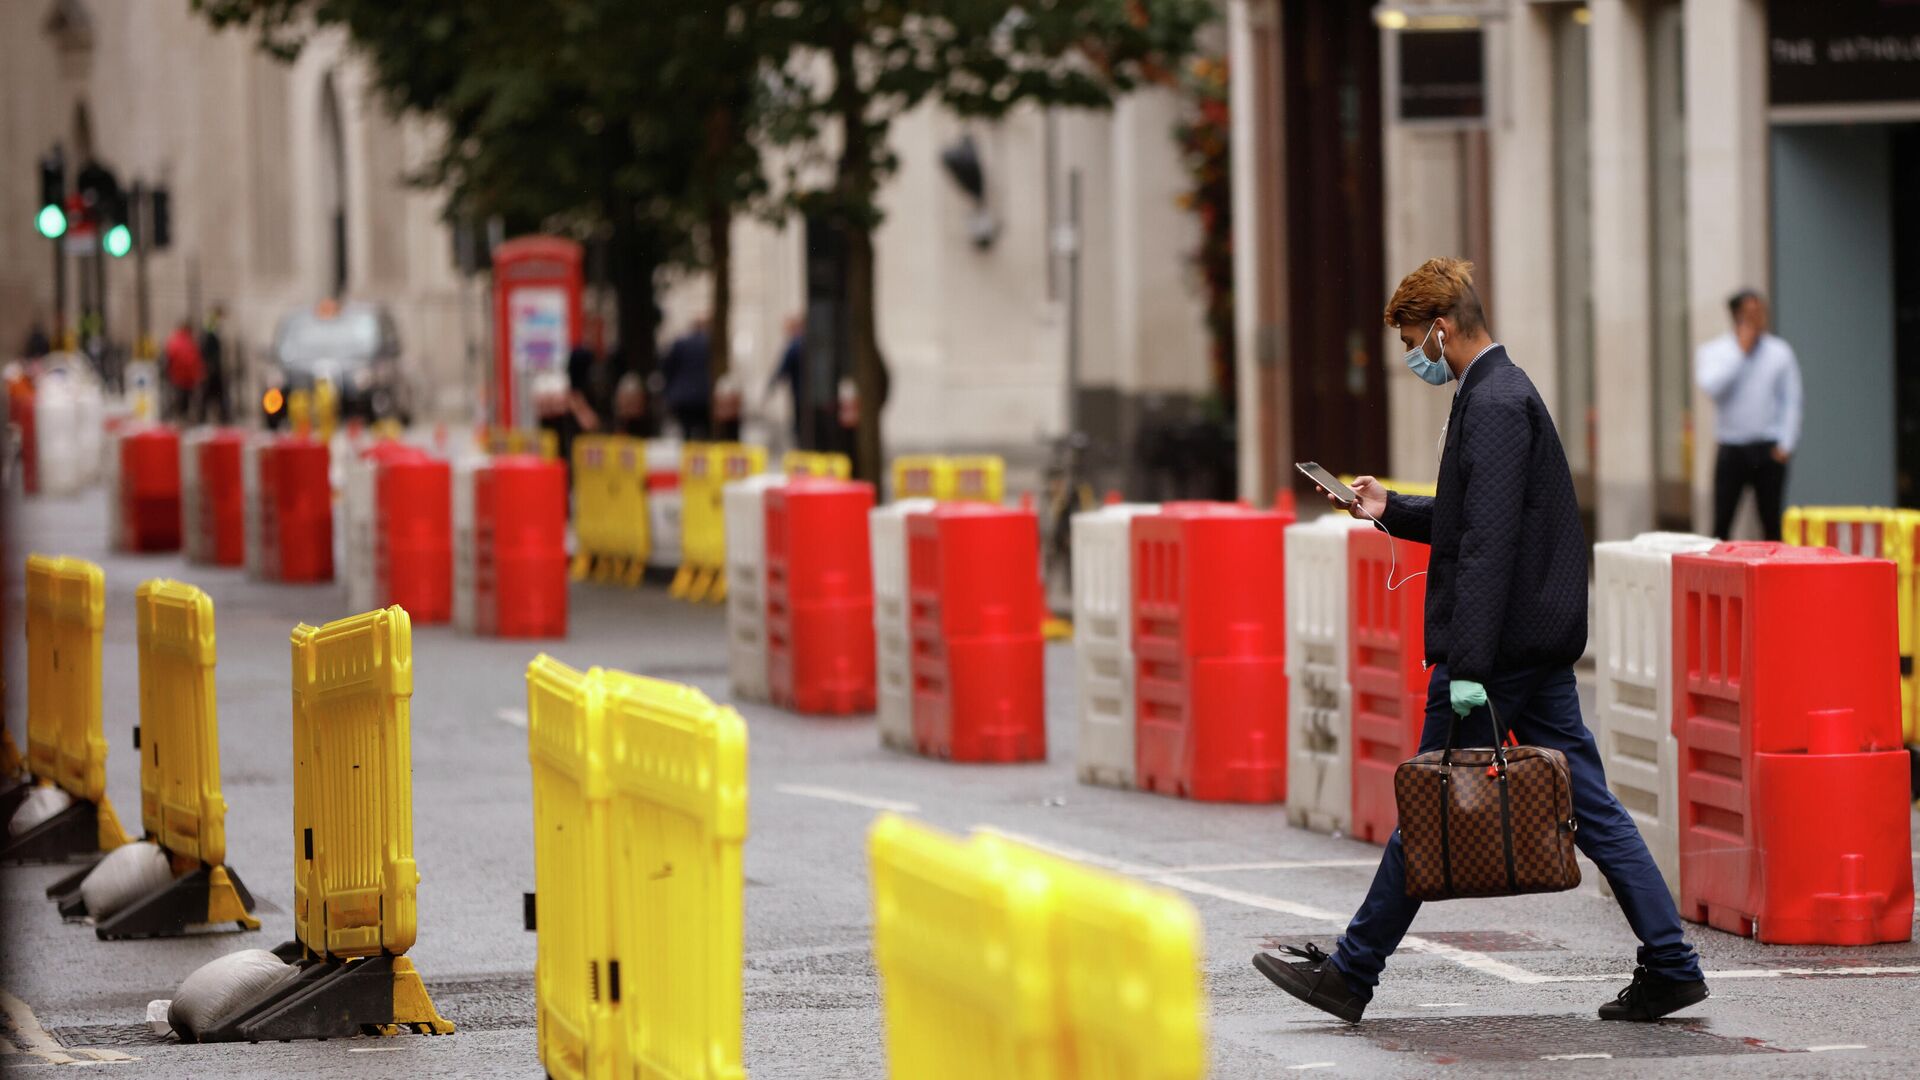 Мужчина в защитной маске переходит дорогу с установленными на ней барьерами для социального дистанцирования в Лондоне - РИА Новости, 1920, 25.09.2020